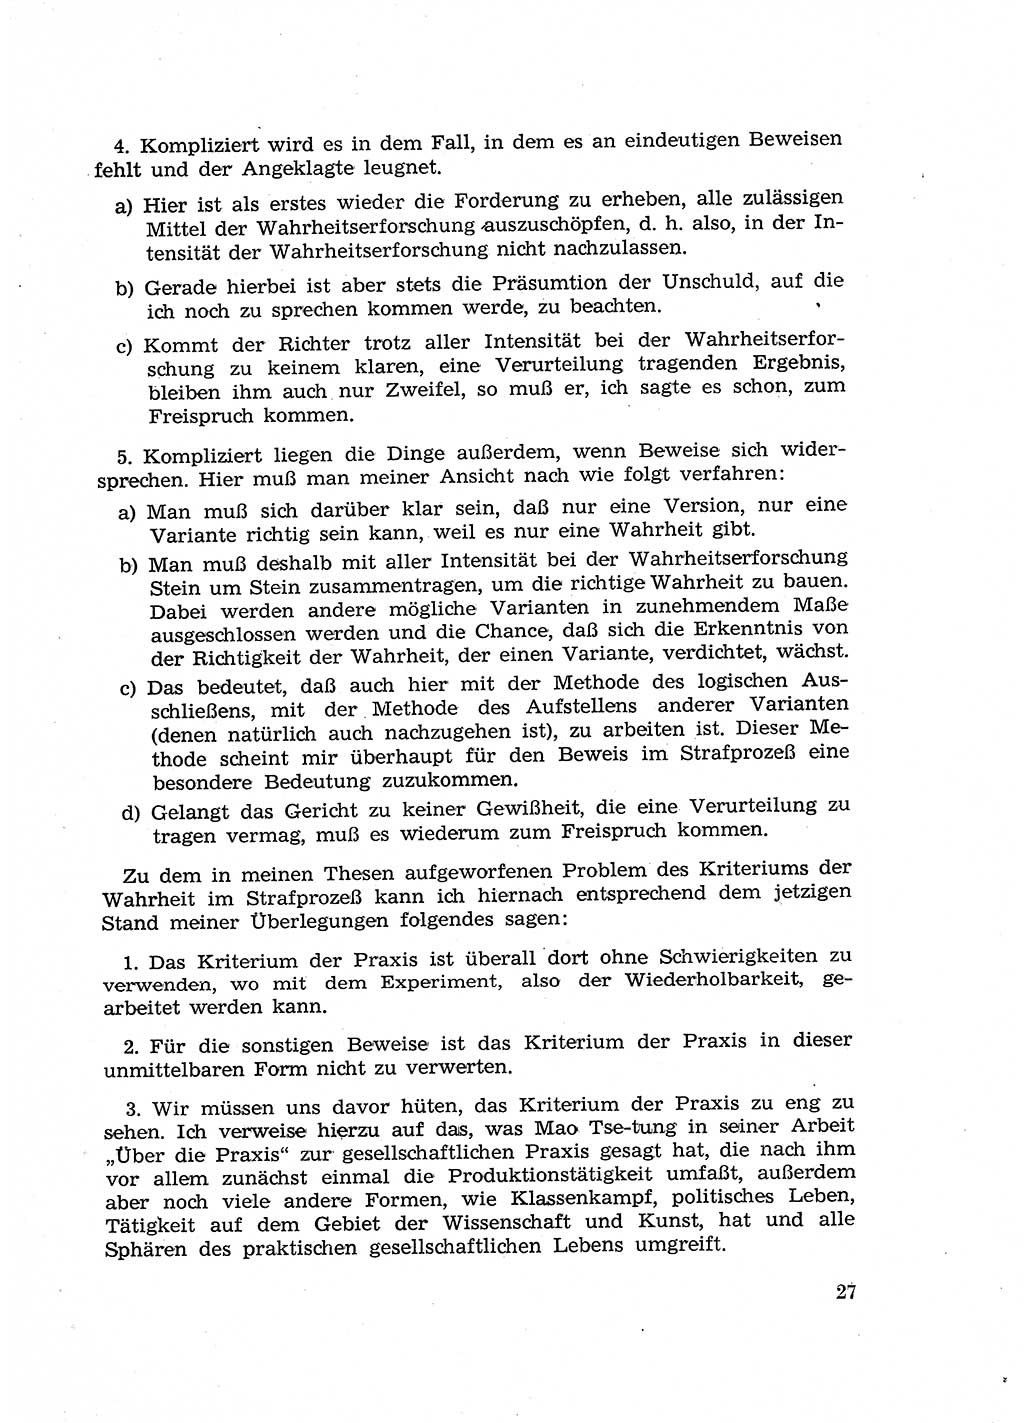 Fragen des Beweisrechts im Strafprozess [Deutsche Demokratische Republik (DDR)] 1956, Seite 27 (Fr. BeweisR. Str.-Proz. DDR 1956, S. 27)